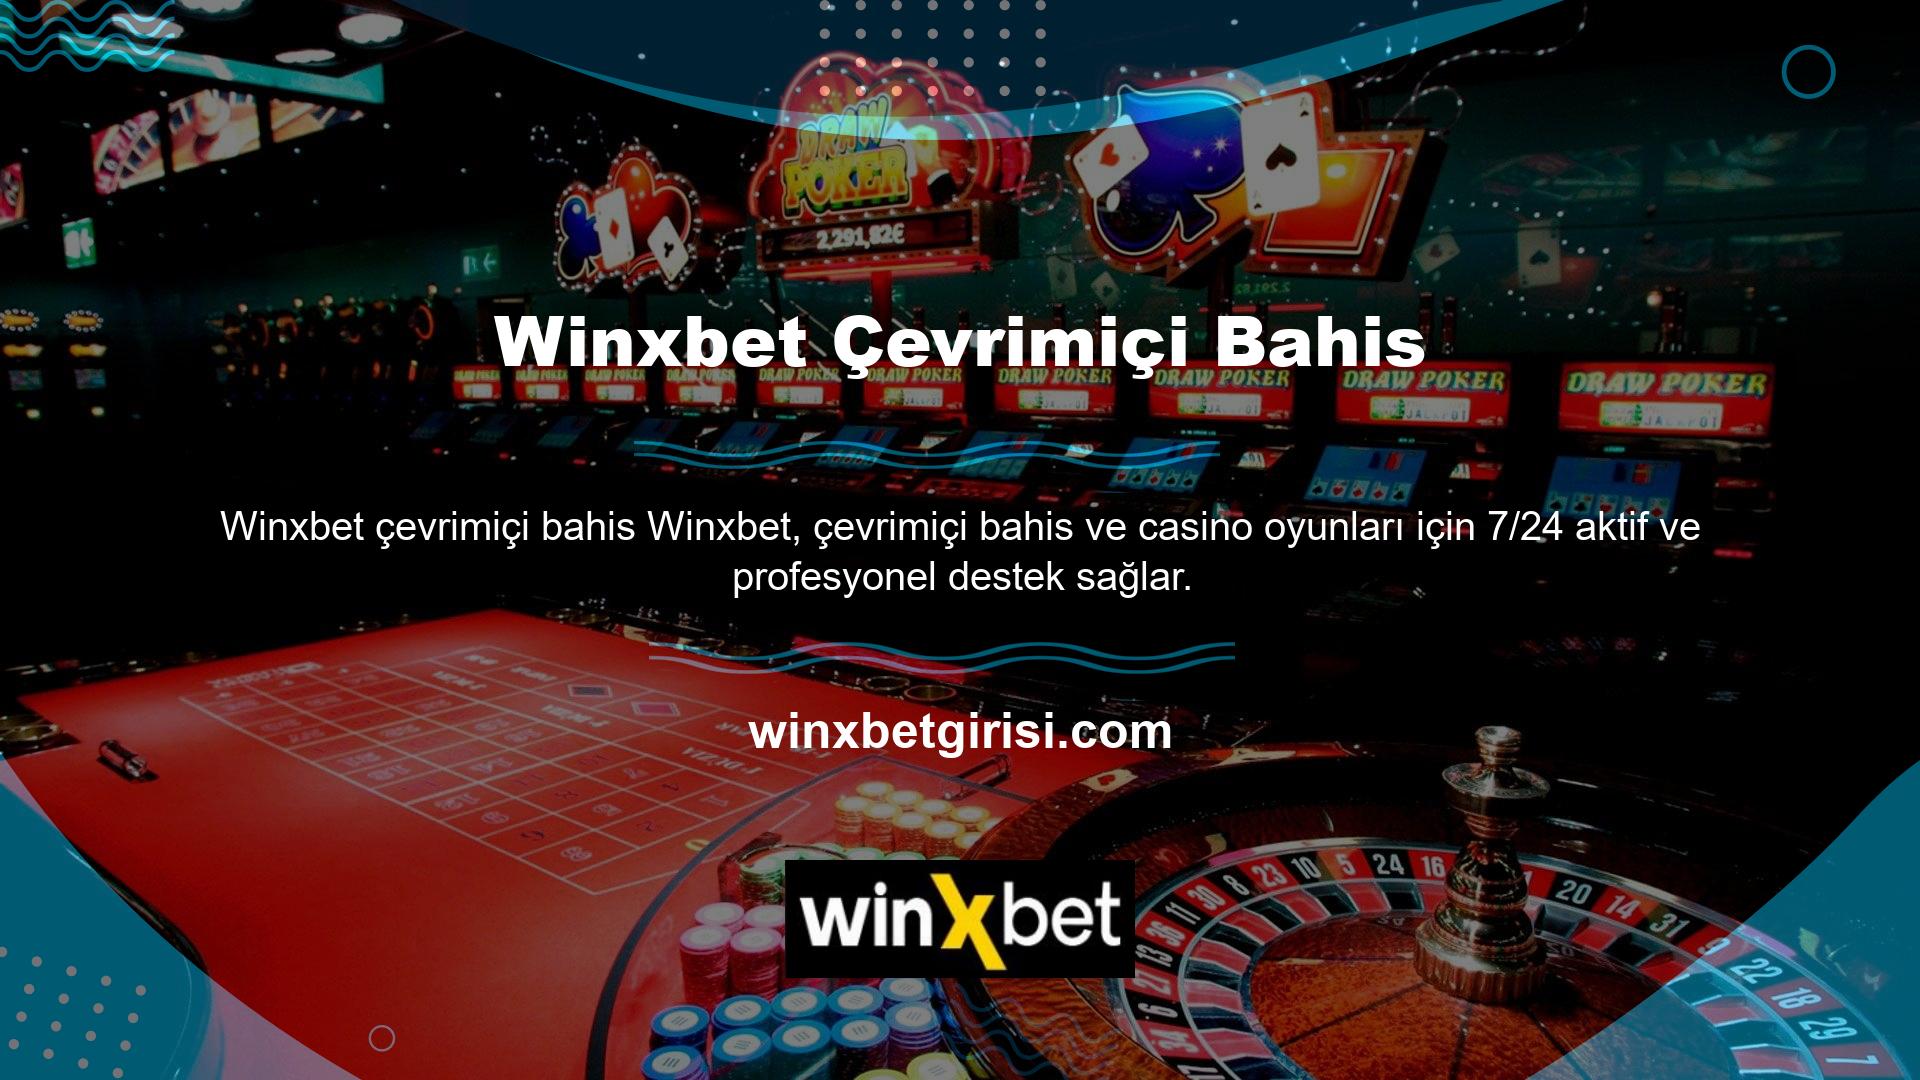 Winxbet çevrimiçi bahis voleybol, basketbol, ​​canlı bahis, casino, sanal Winxbet çevrimiçi bahis , altın ve birçok saha dışı oyuna ev sahipliği yapmaktadır